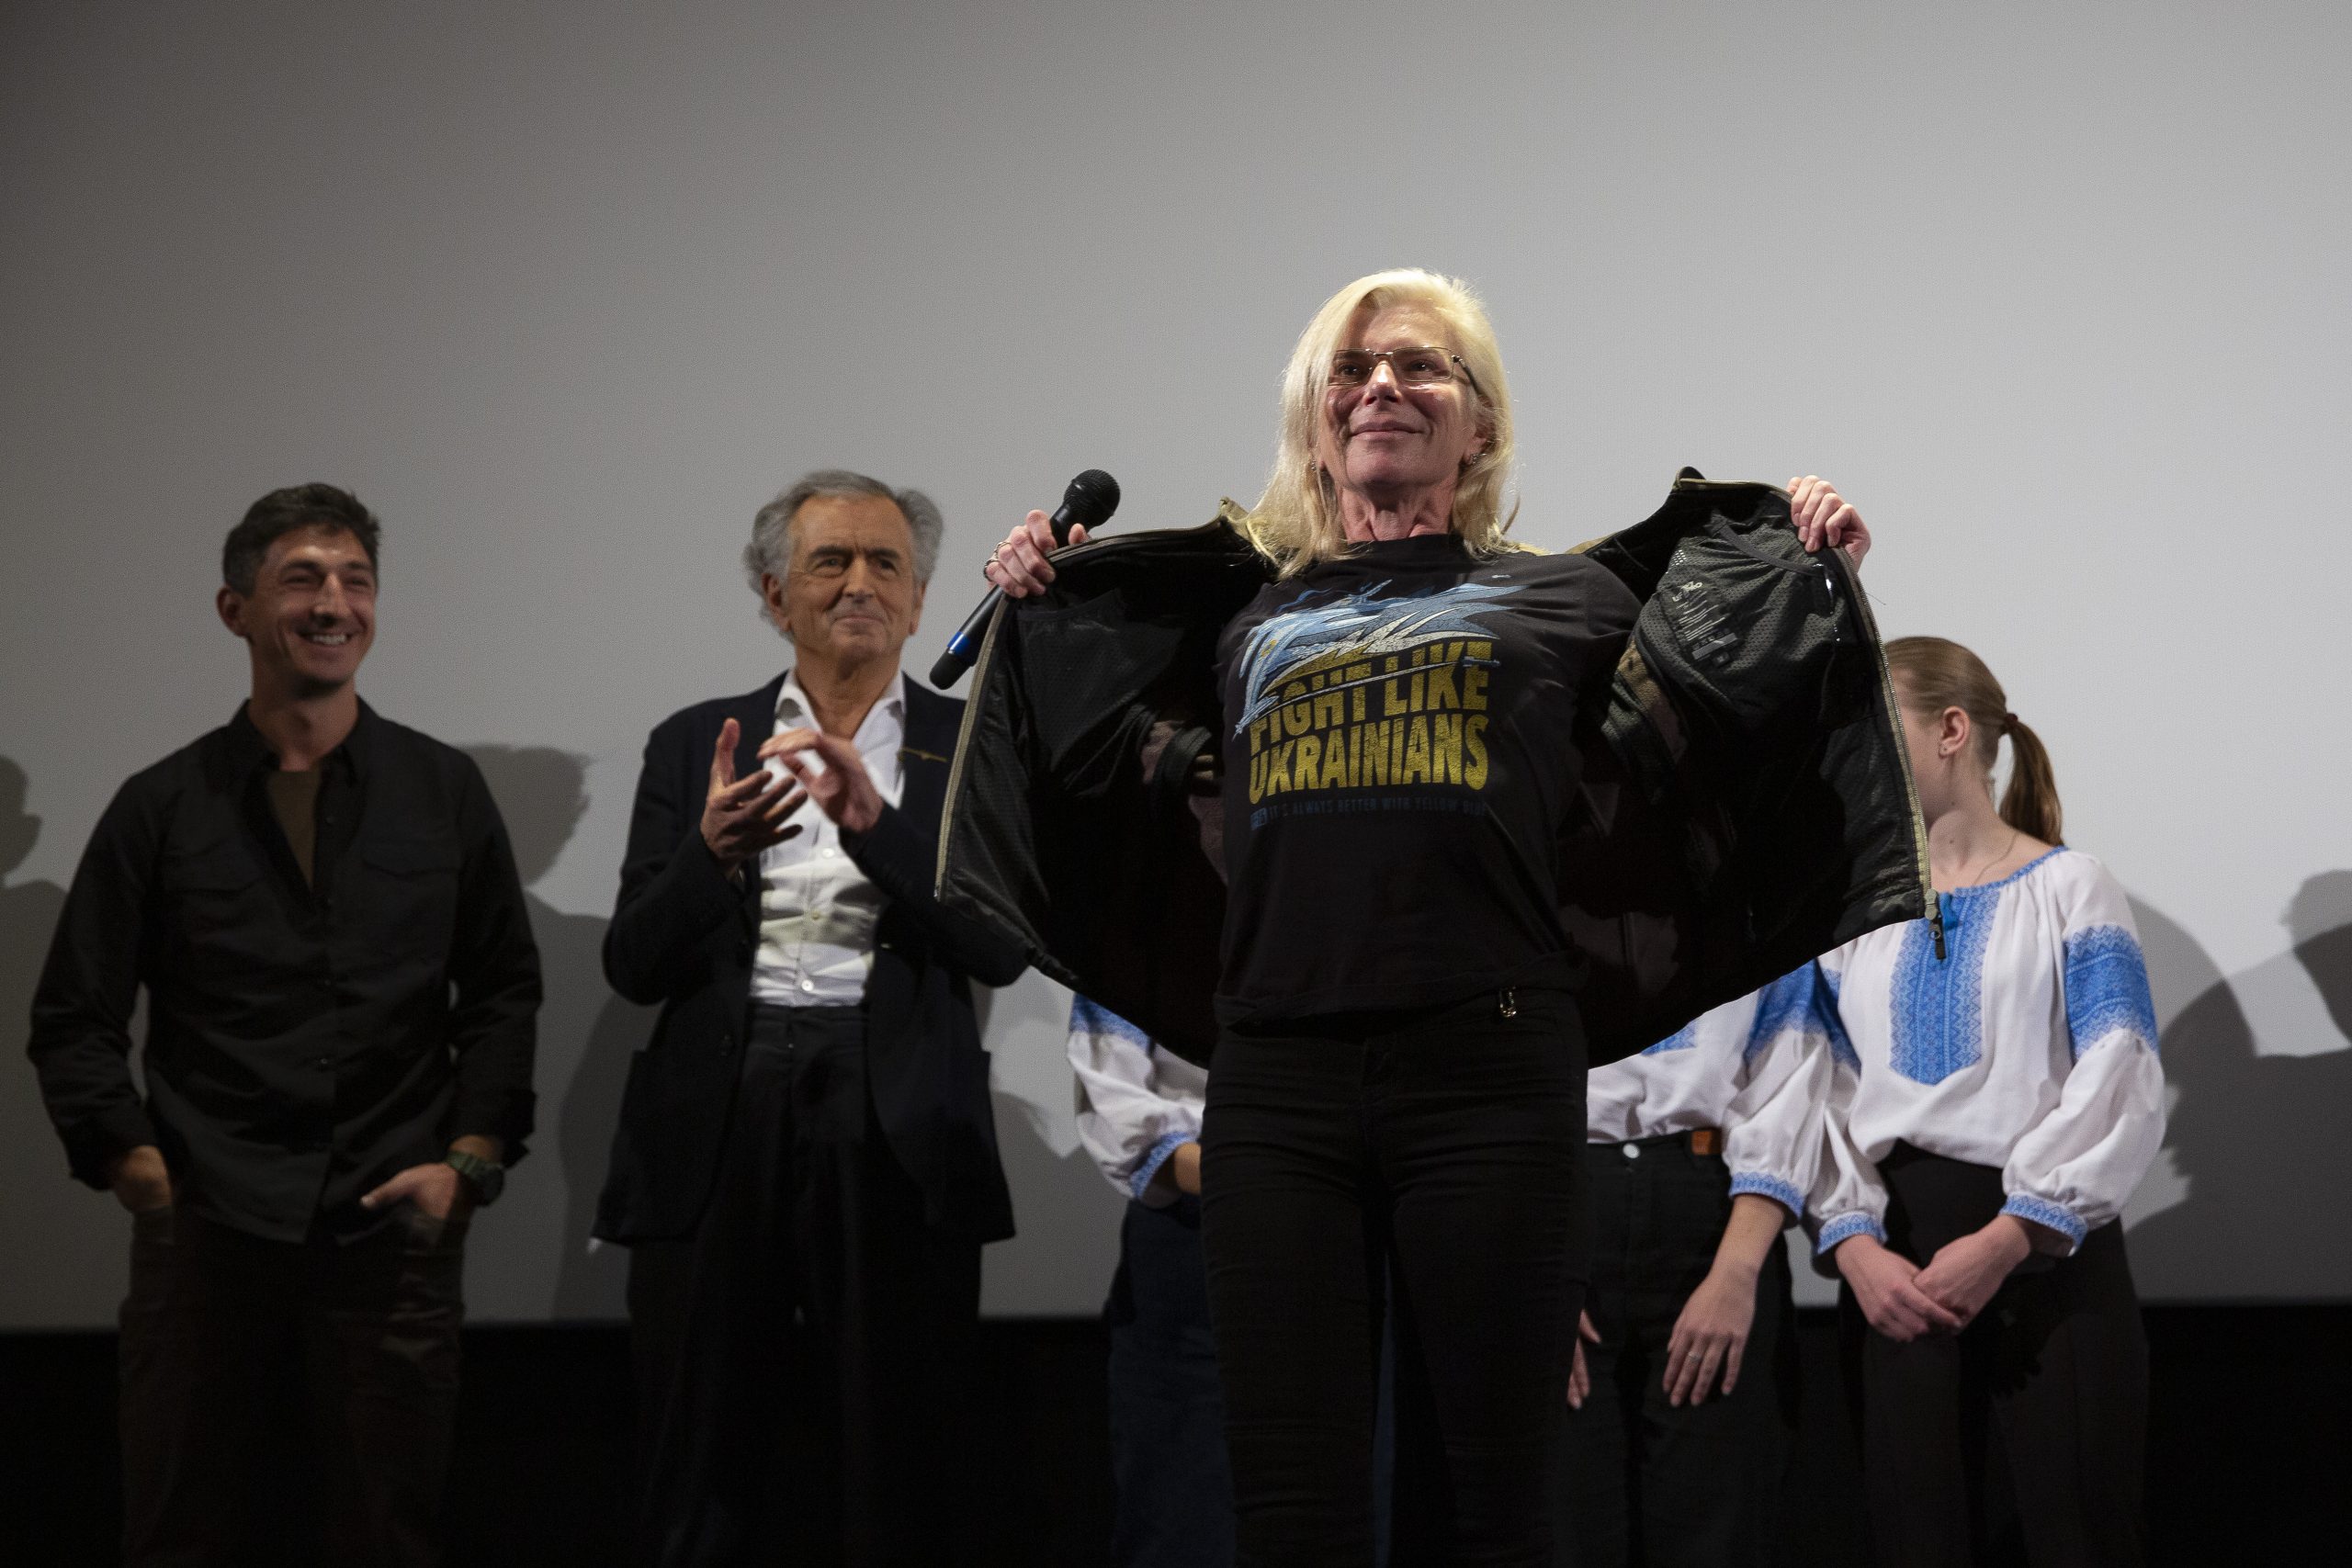 Taïra sur la scène du cinéma le Balzac, à l'issue de la projection du film de BHL. Elle montre son t-shirt sur lequel on peut lire "Fight Like Ukrainians". Derrière on voit Vitaly Paly, Bernard-Henri Lévy et trois petites filles.